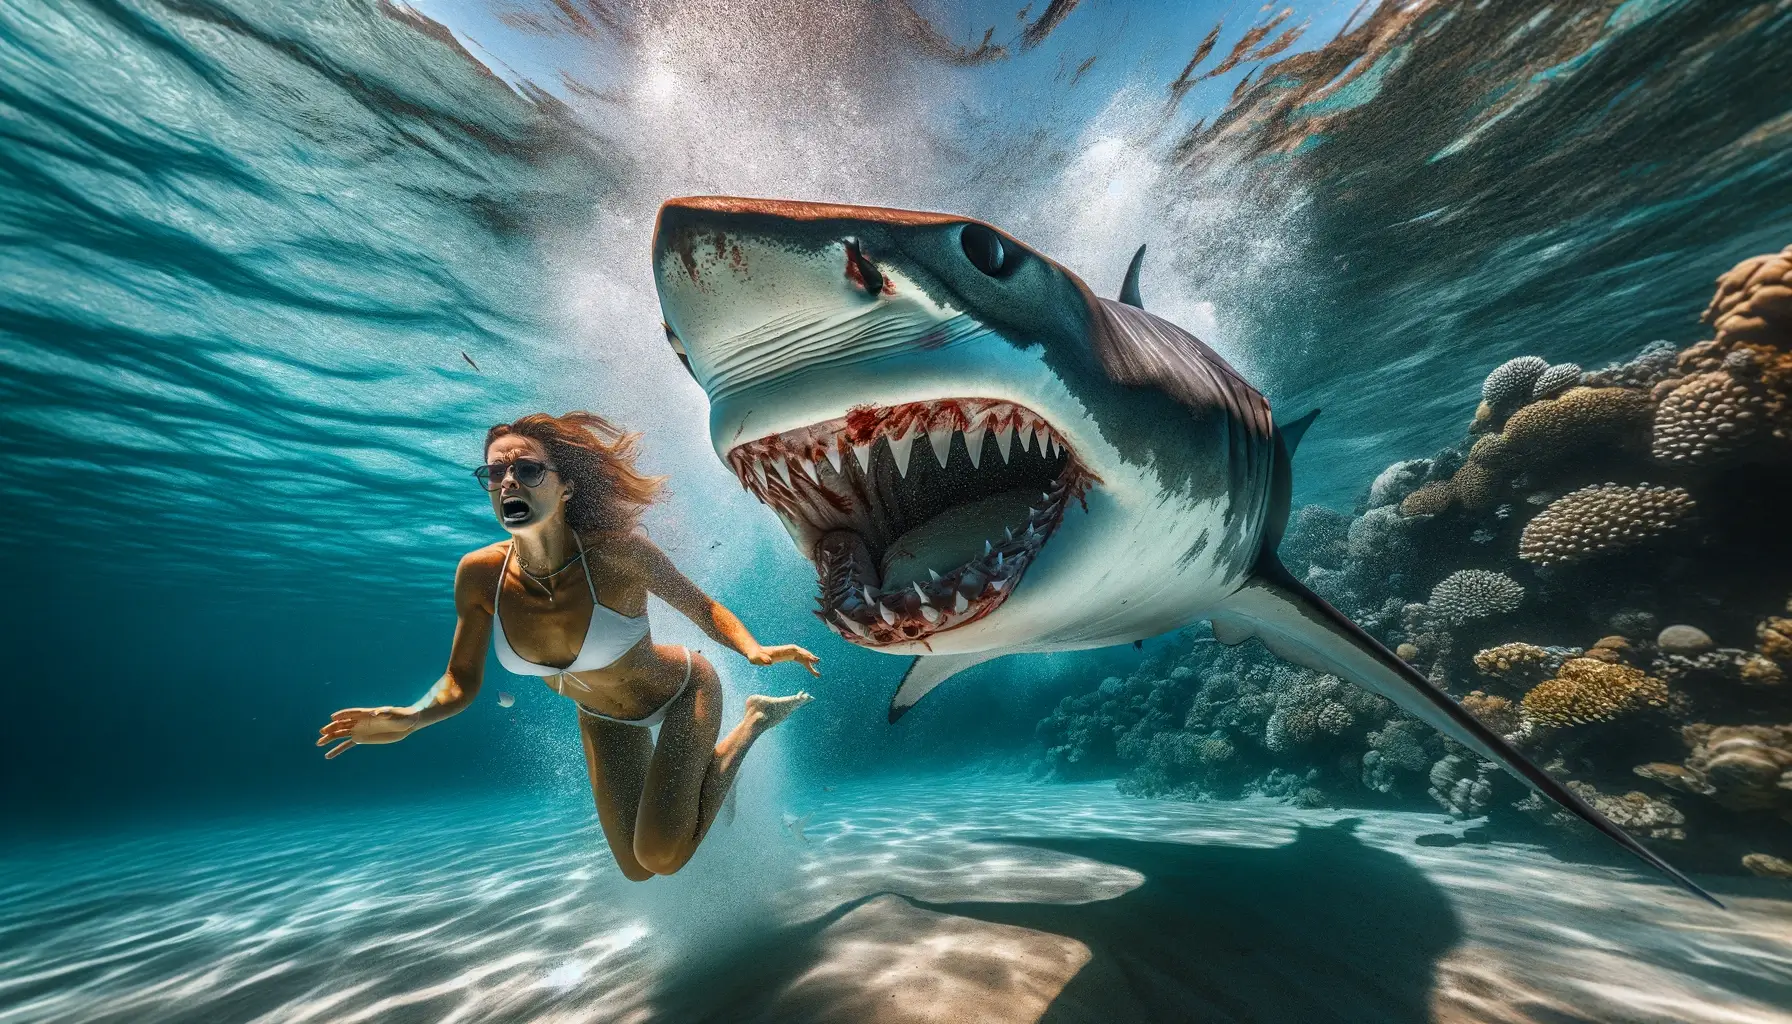 Полноразмерное изображение ужасающей акулы, напавшей на русскую туристку в Красном море недалеко от Хургады. Оно передает ту интенсивность и драматизм, которые вы себе даже представить не можете.